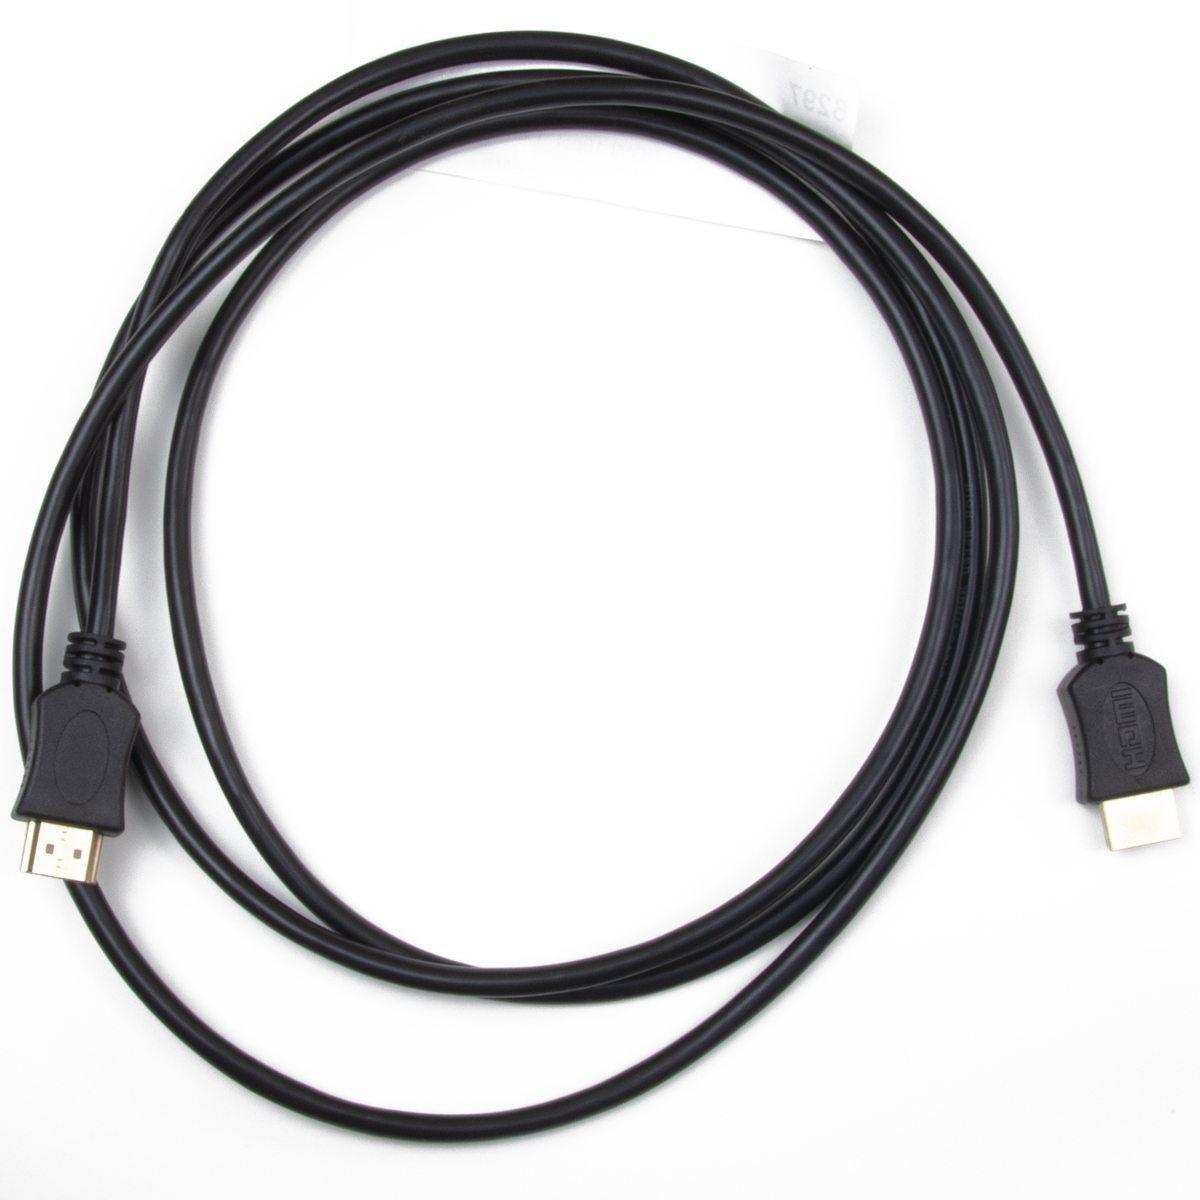 Anschlusskabel HDMI 19pol 1,8m 3D + Netzwerkfähig